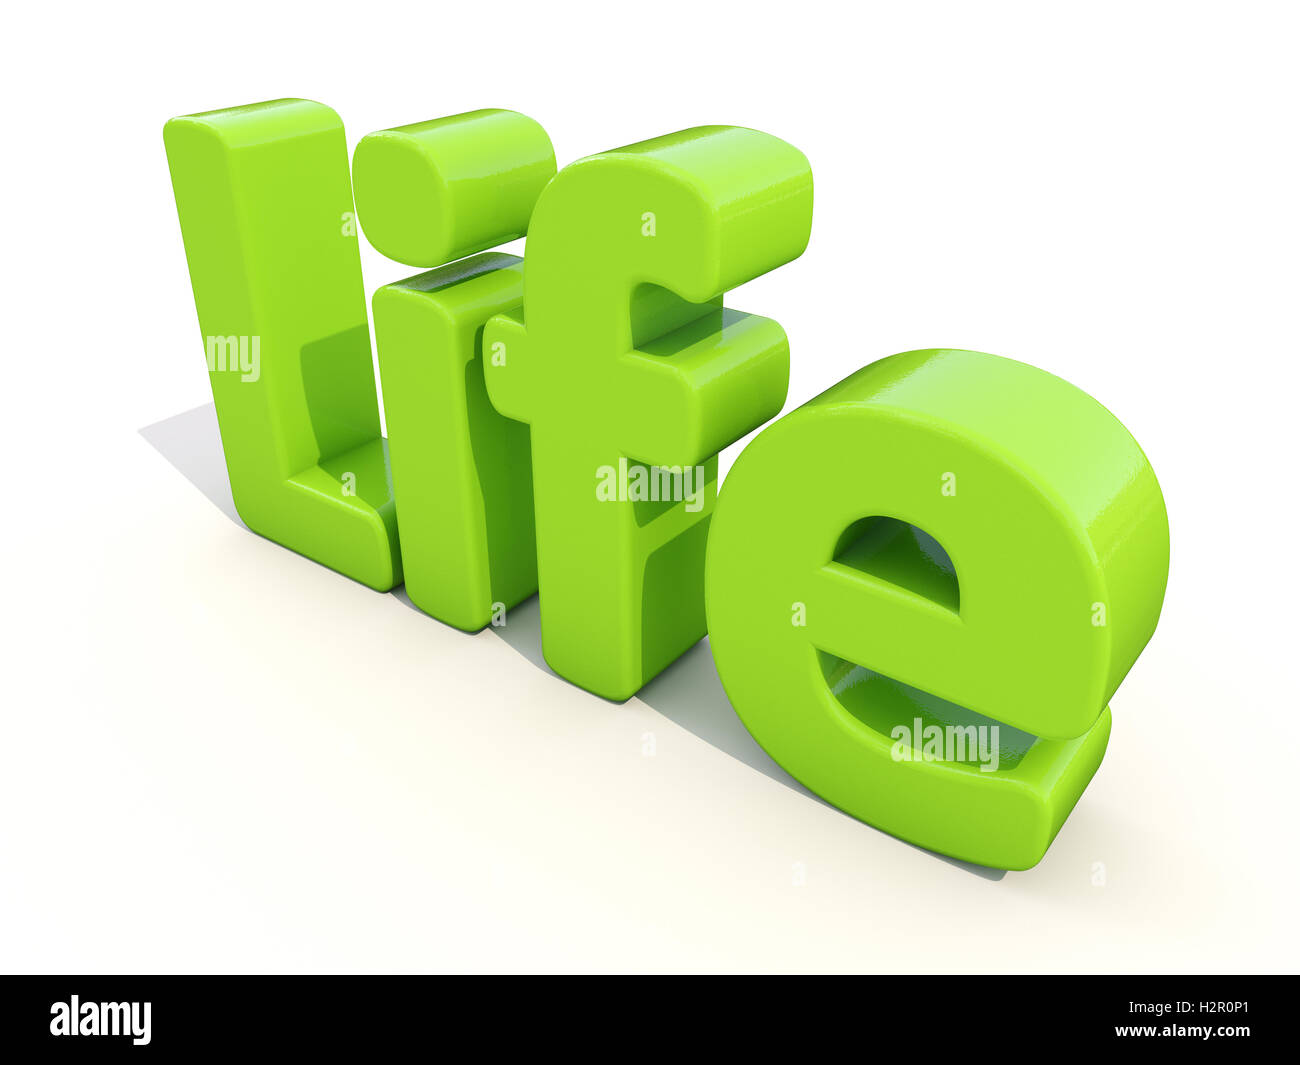 Life d3. 3d слова. Life слово 3 d. 3d Life картинки. Слово жизнь на белом фоне.